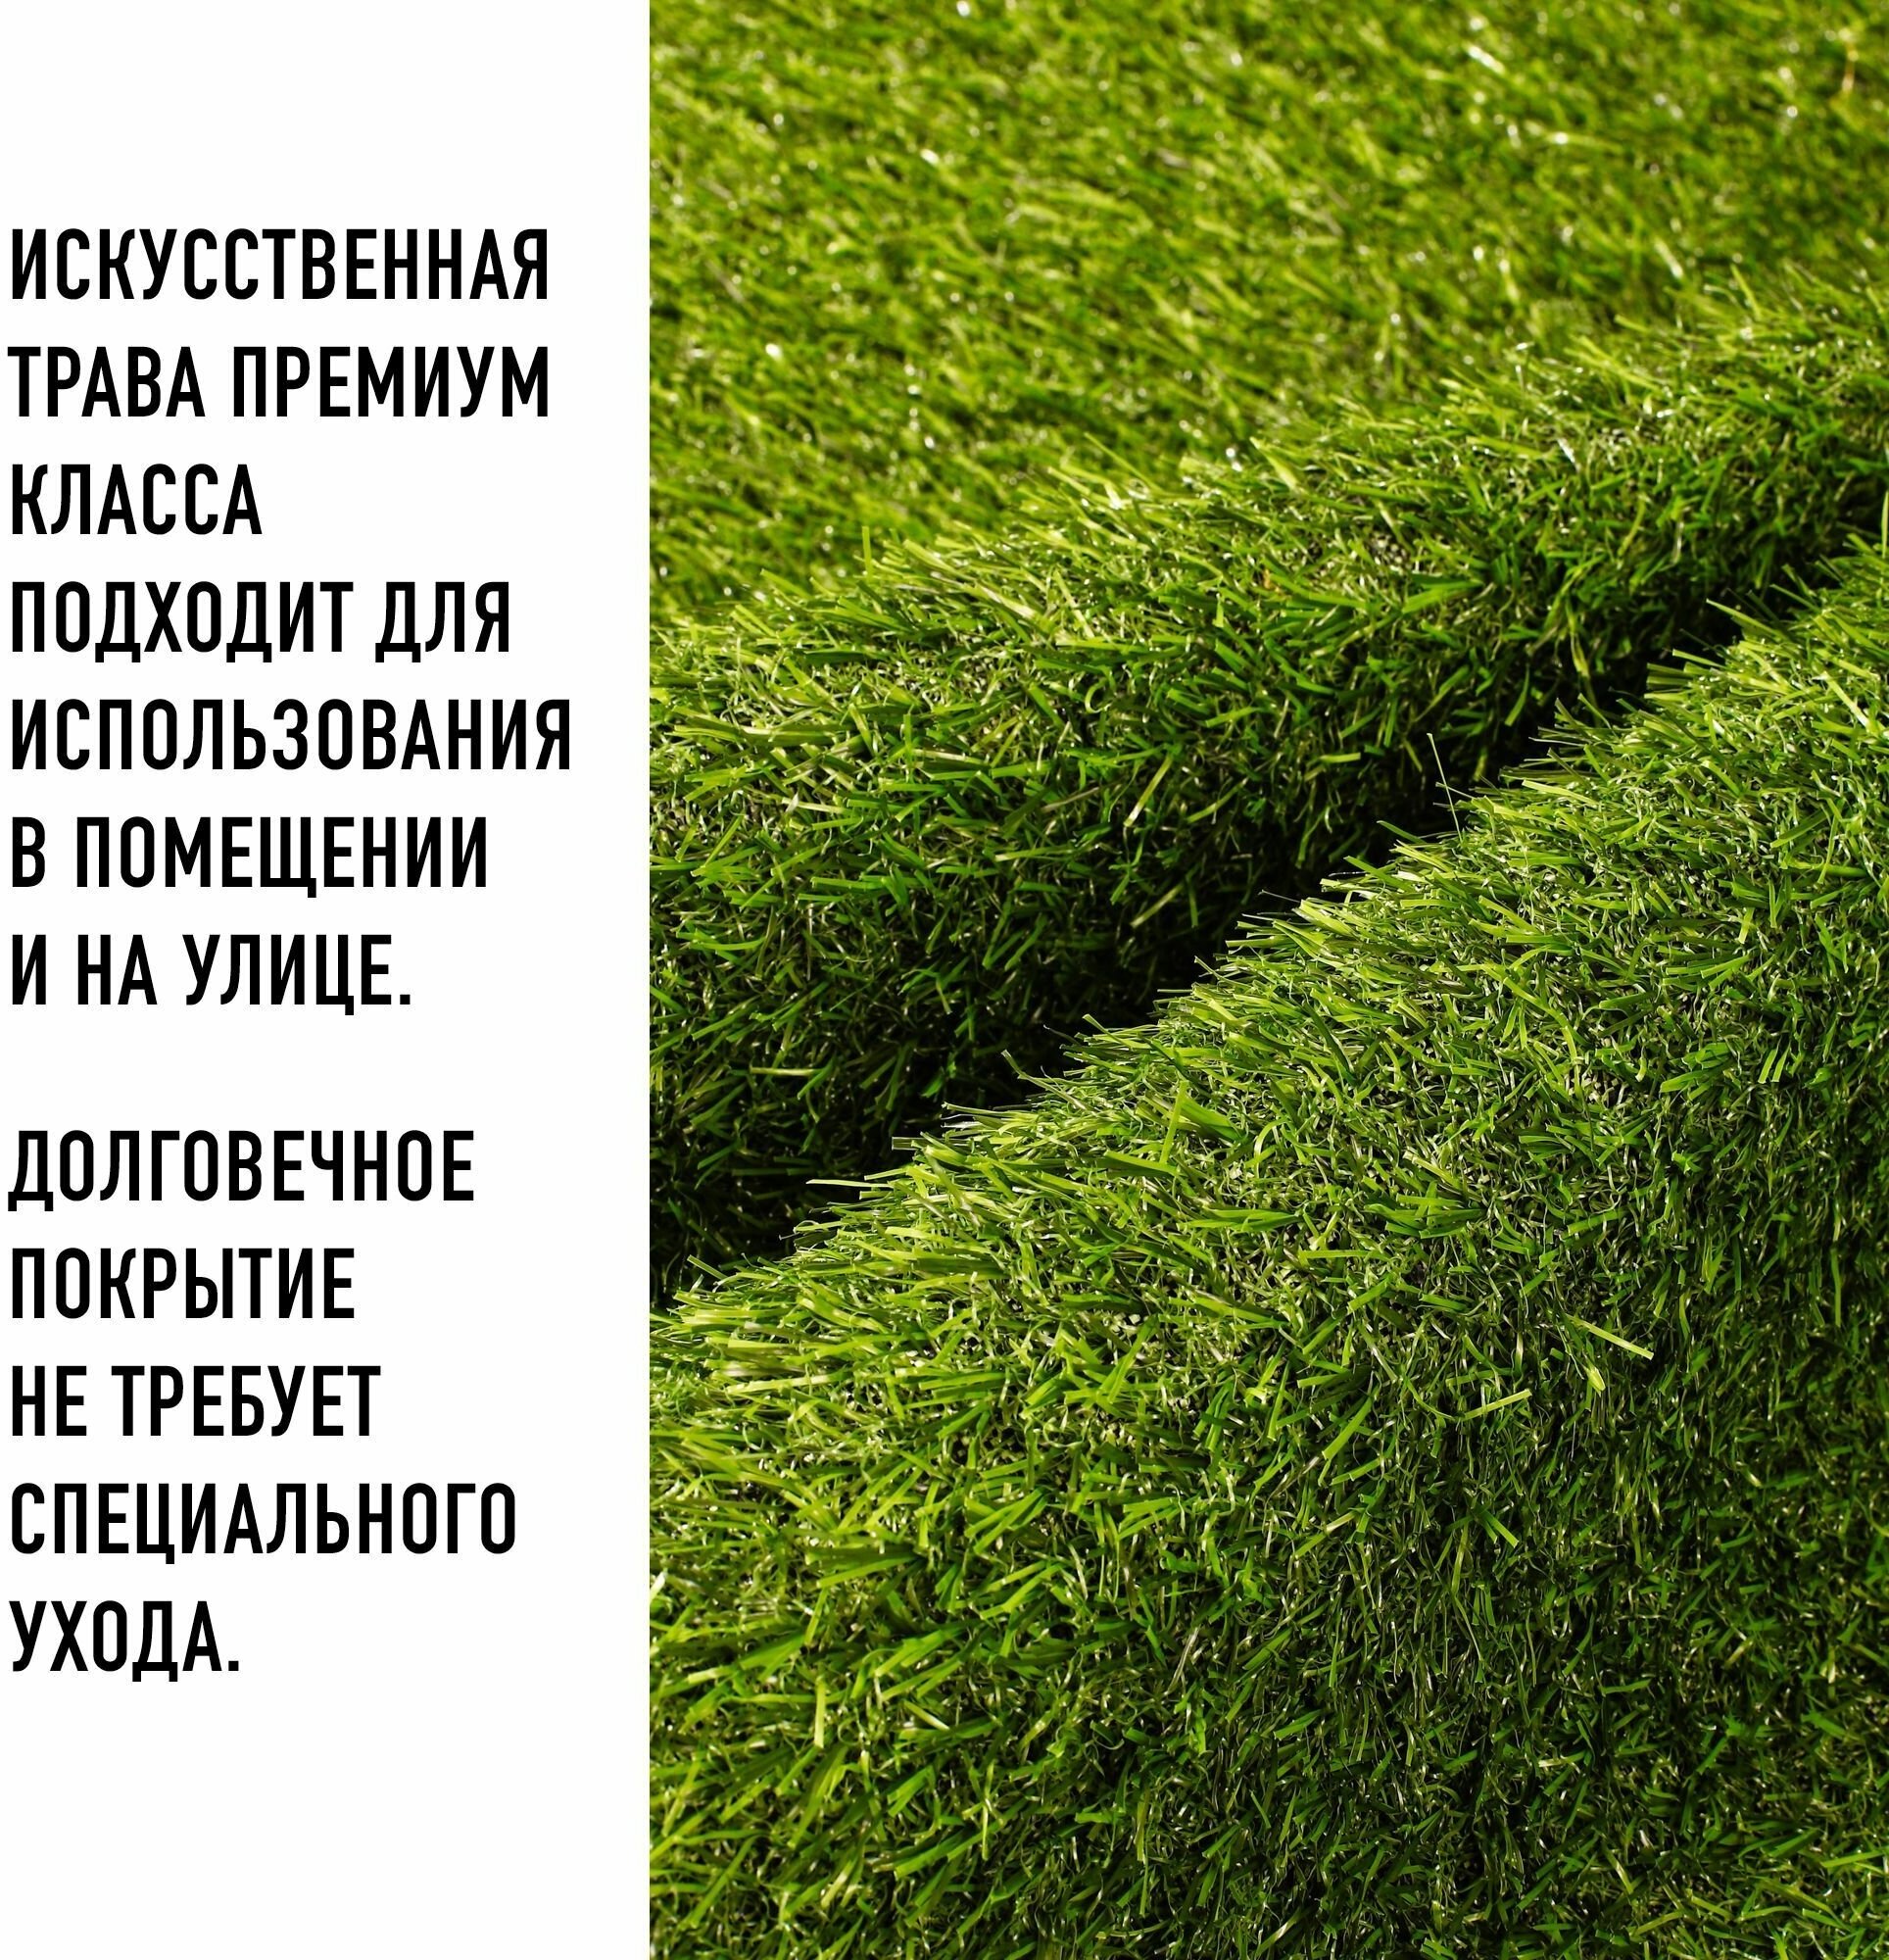 Искусственный газон в рулоне для декора 1,2х6,5м Premium Grass 20 Green, высота ворса 20 мм. Искусственная трава. - фотография № 12